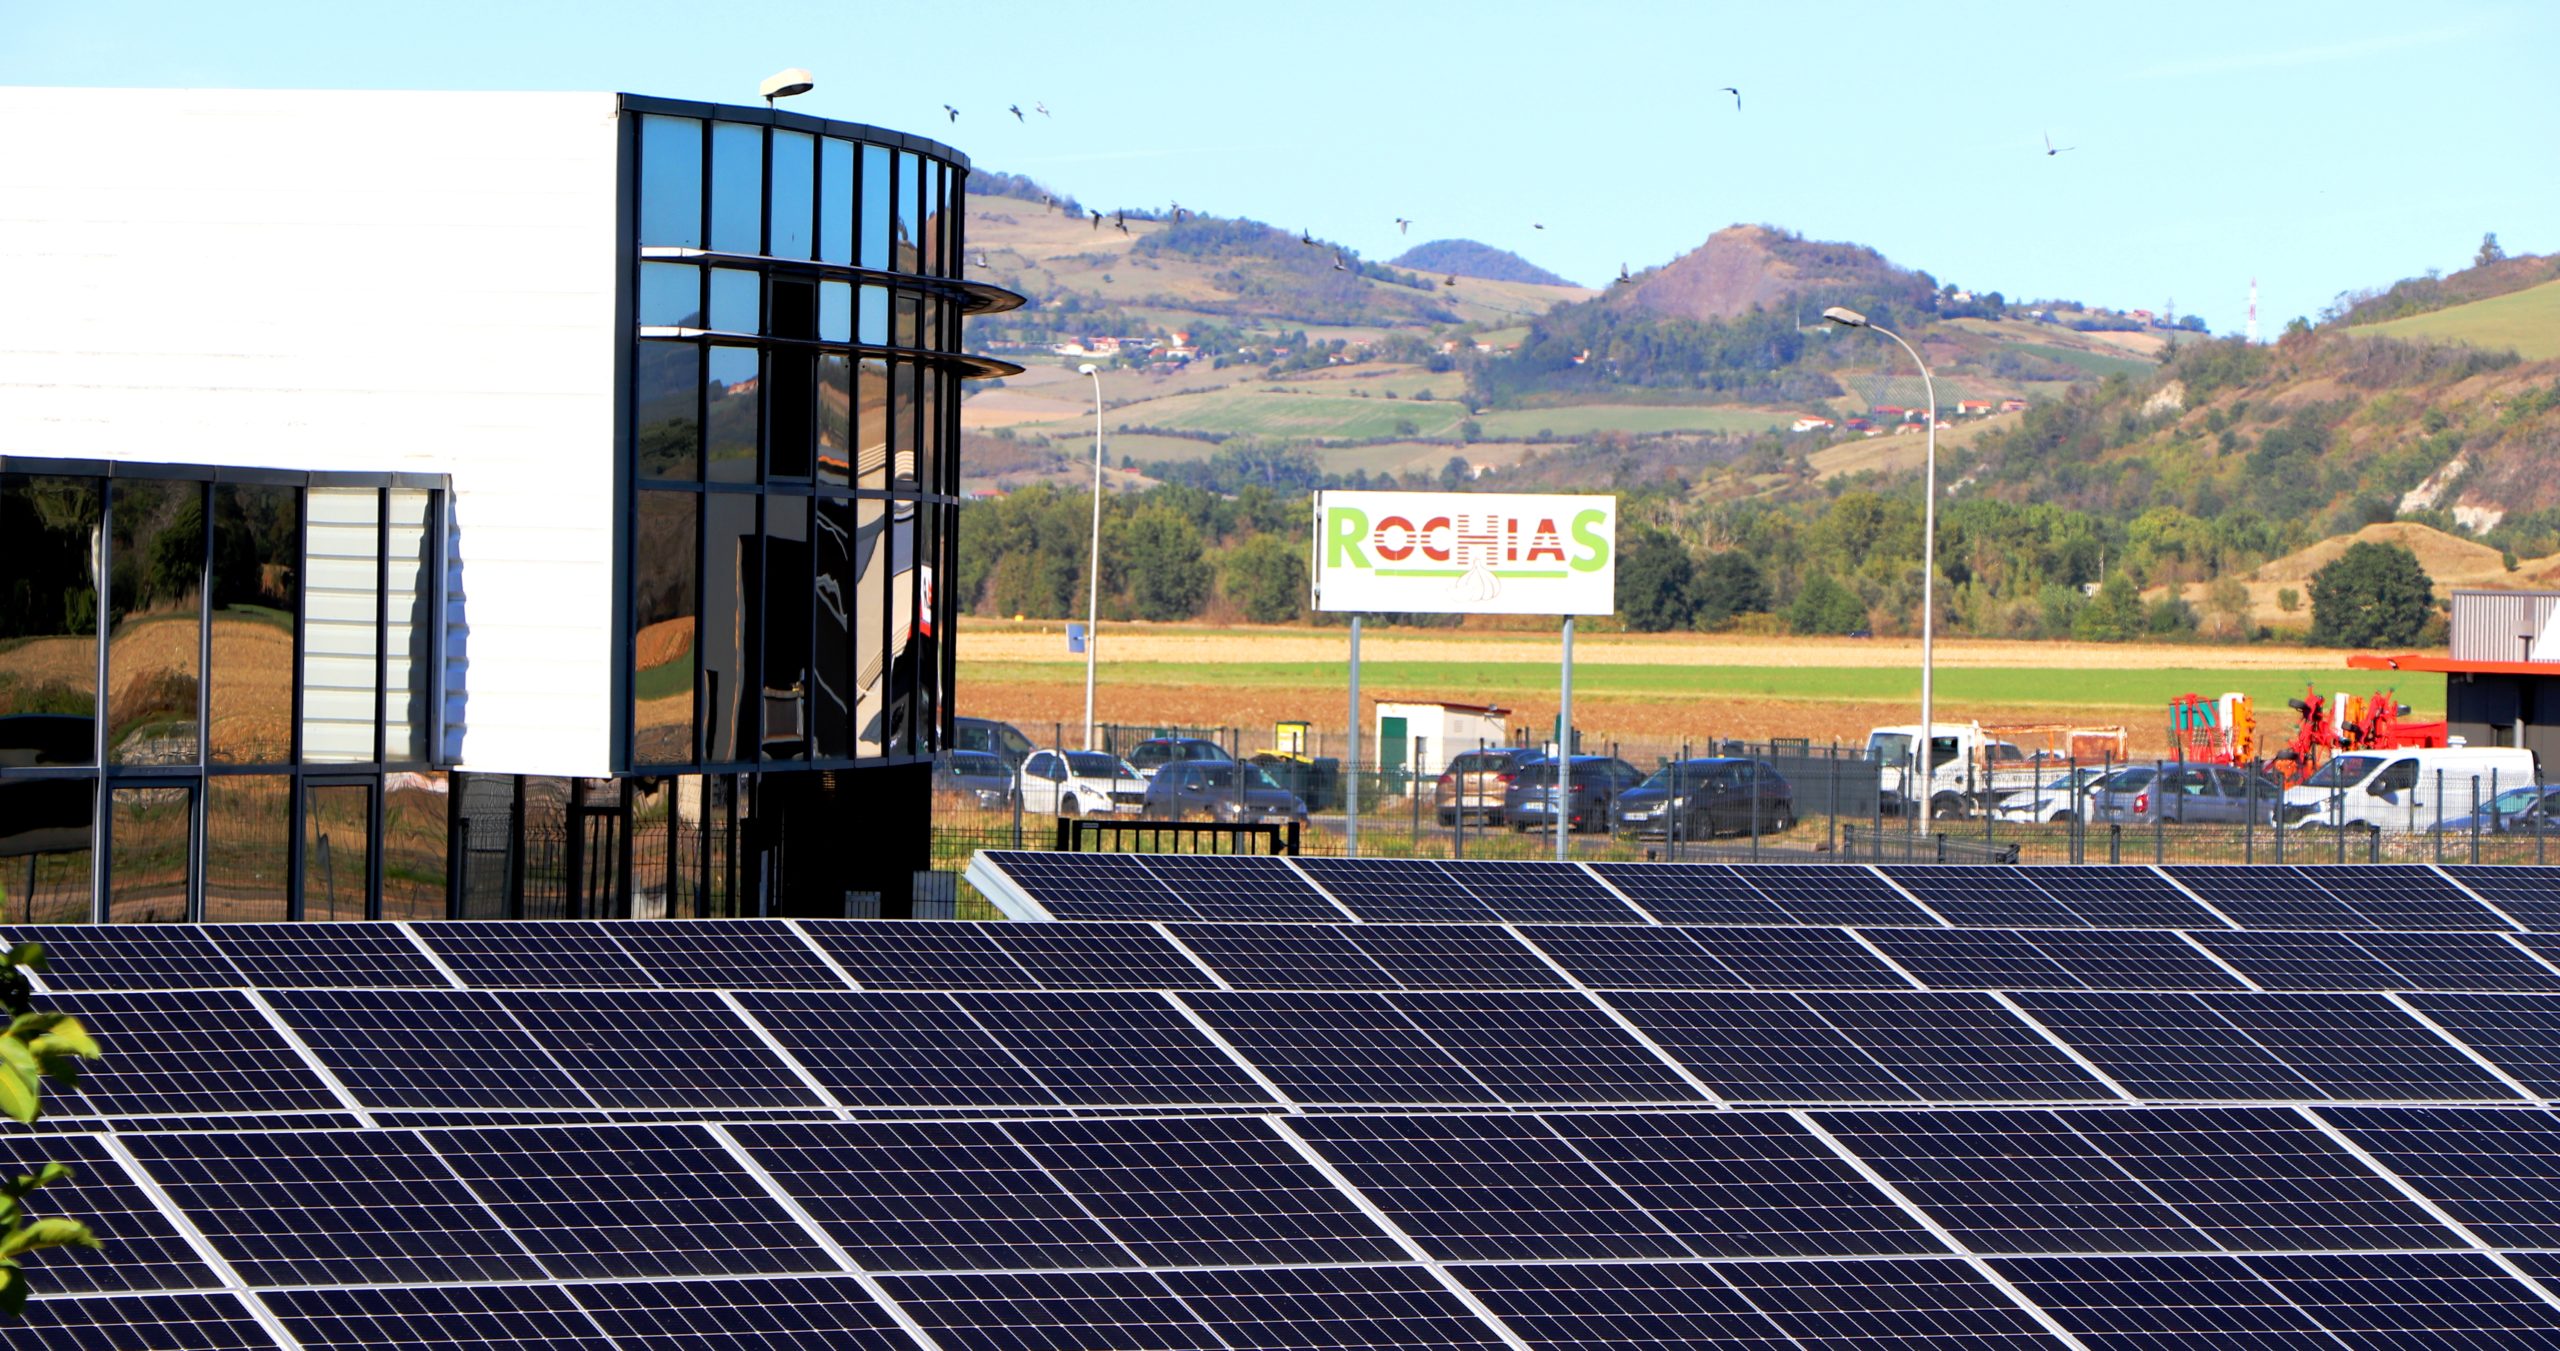 Le bâtiment de Rochias avec ses panneaux photovoltaïques